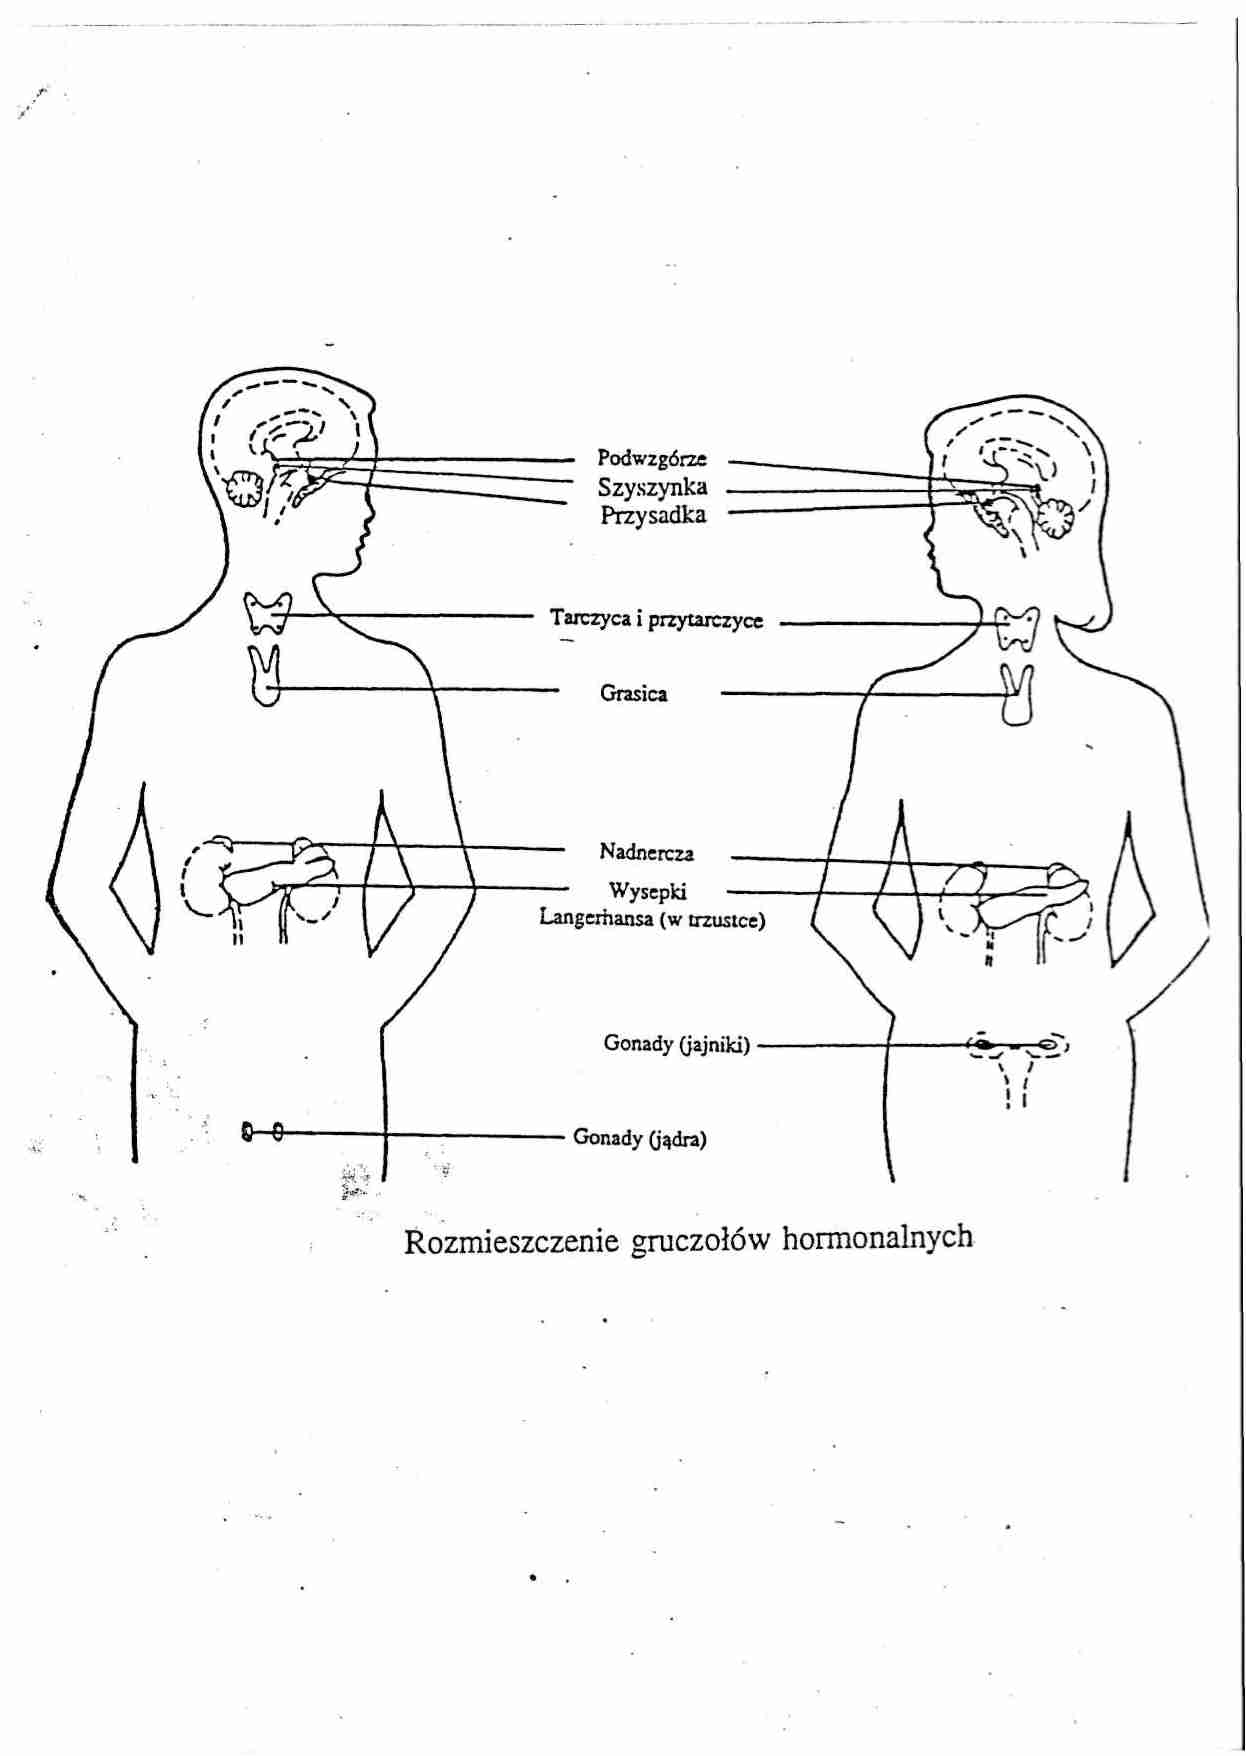 Rozmieszczenie gruczołów hormonalnych - strona 1